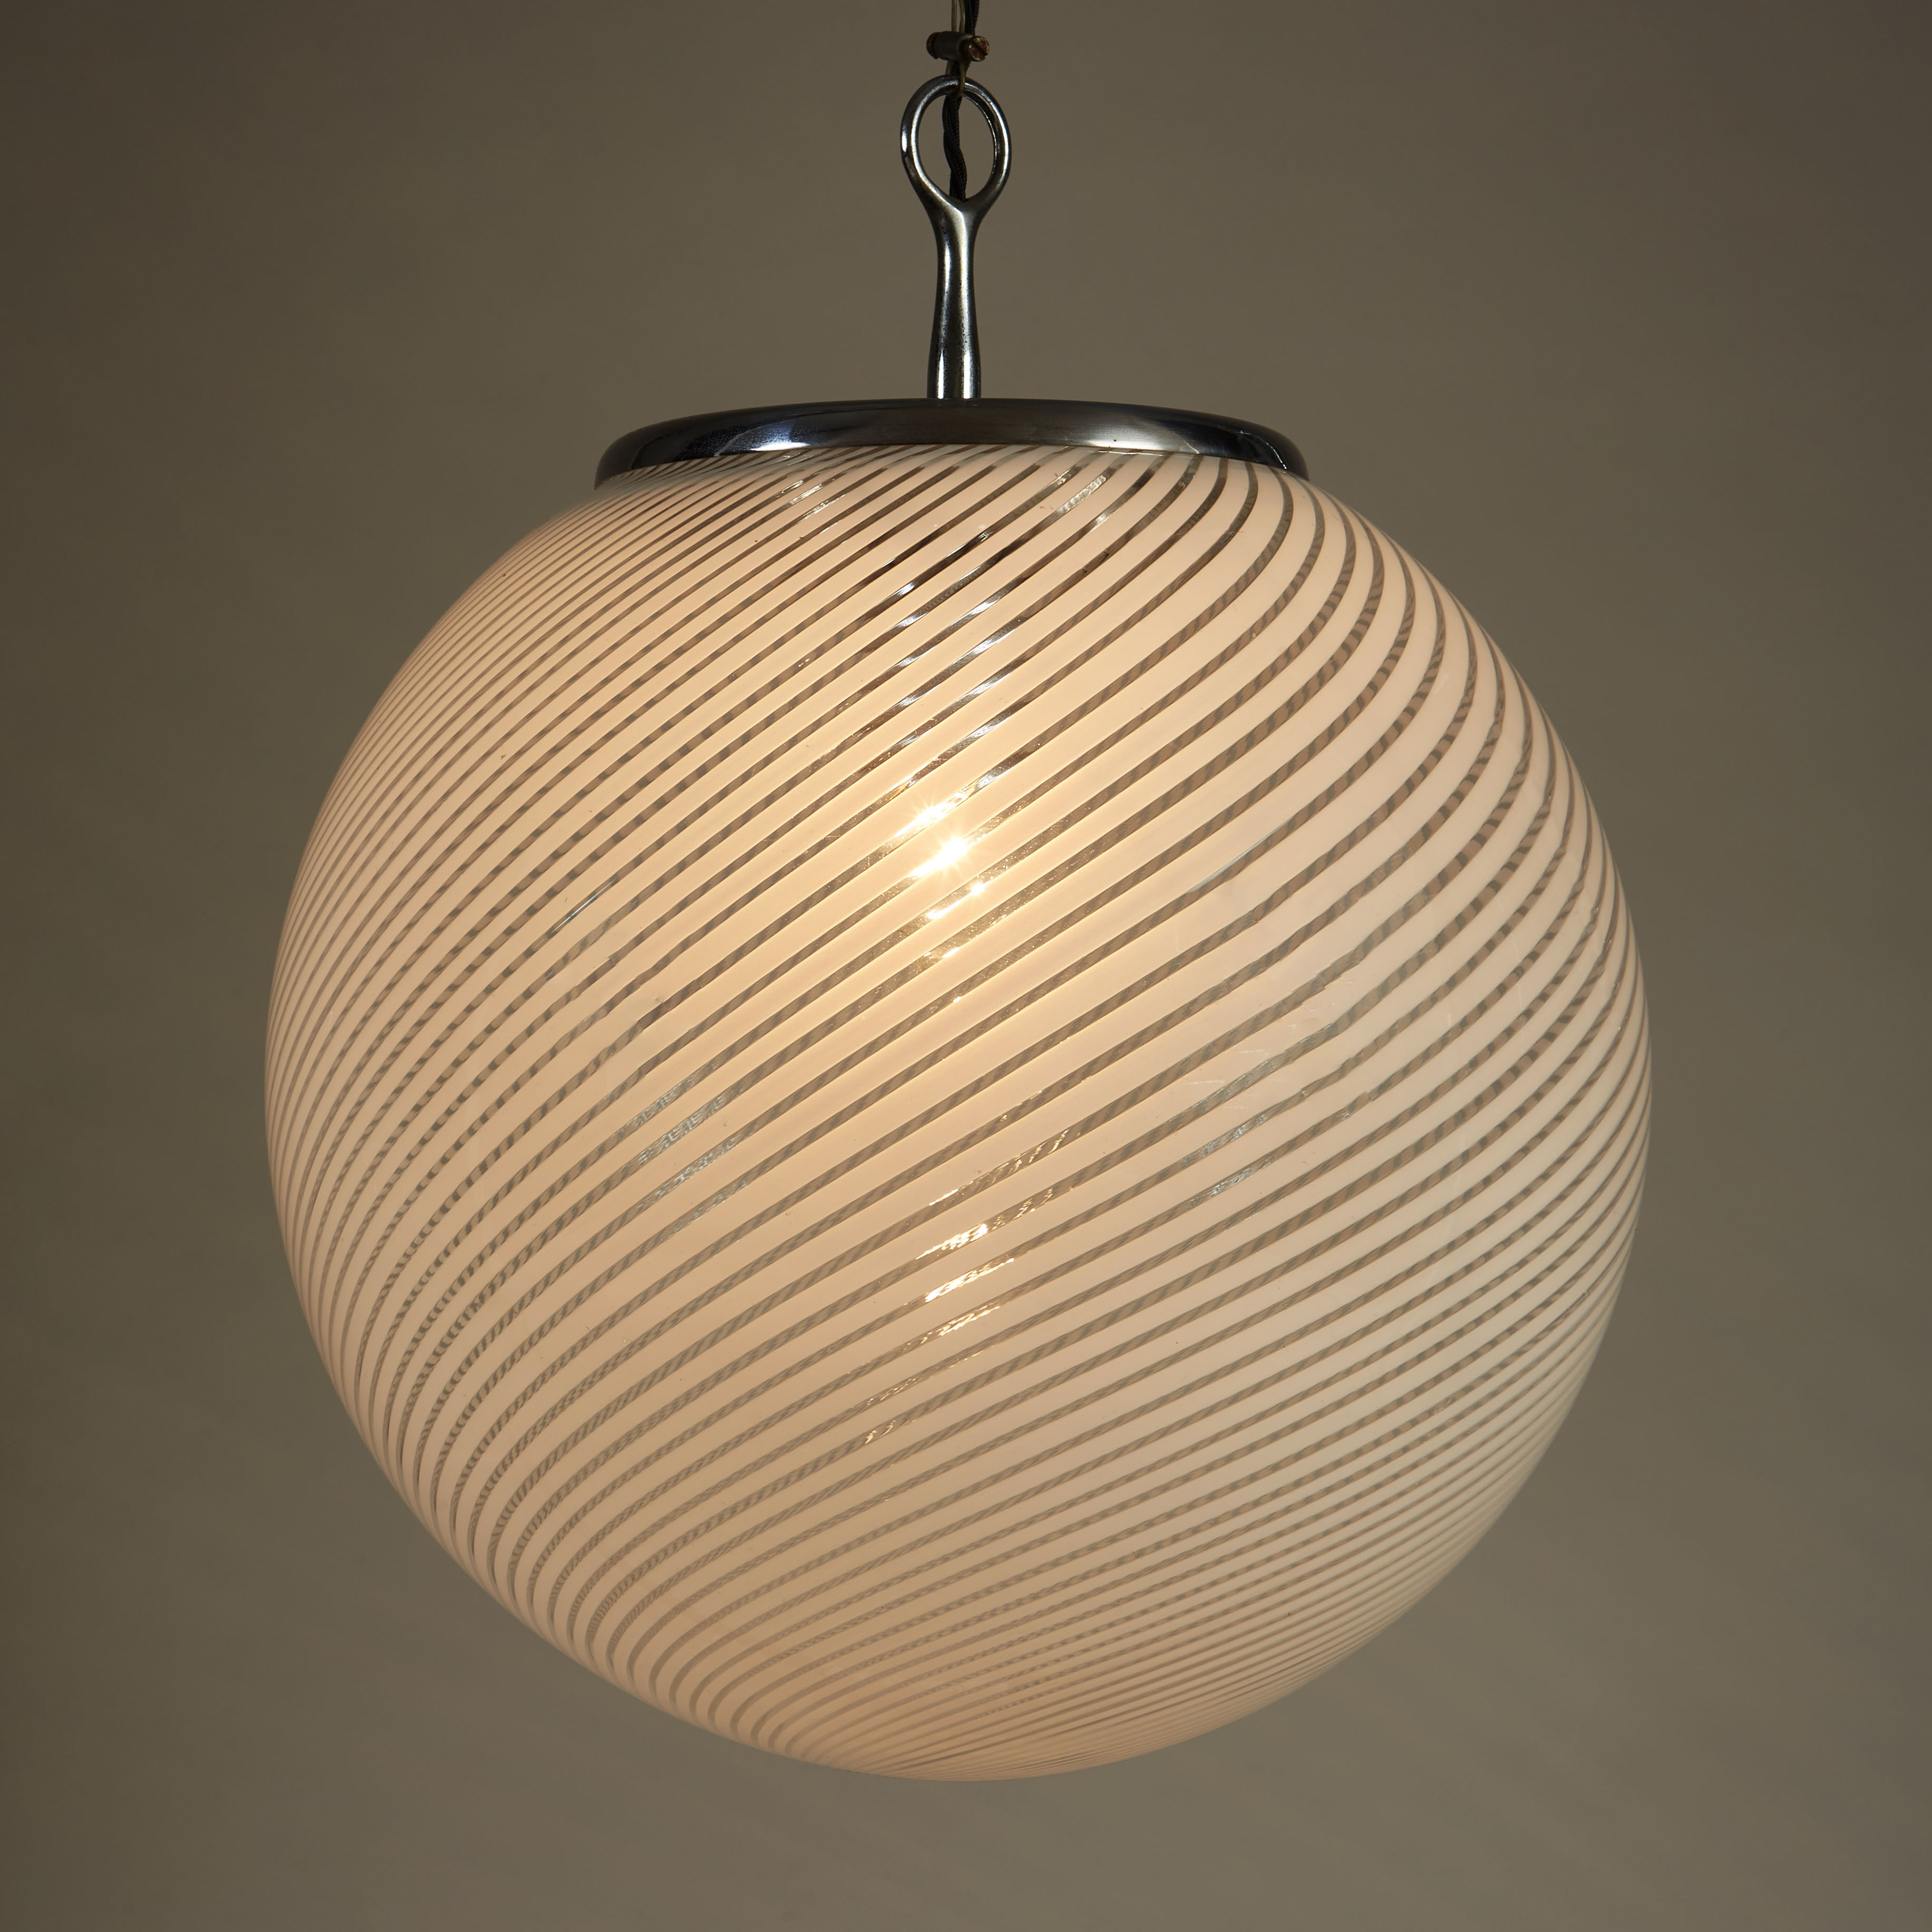 The image for Italian Swirl Ball Lamp 0098 V1